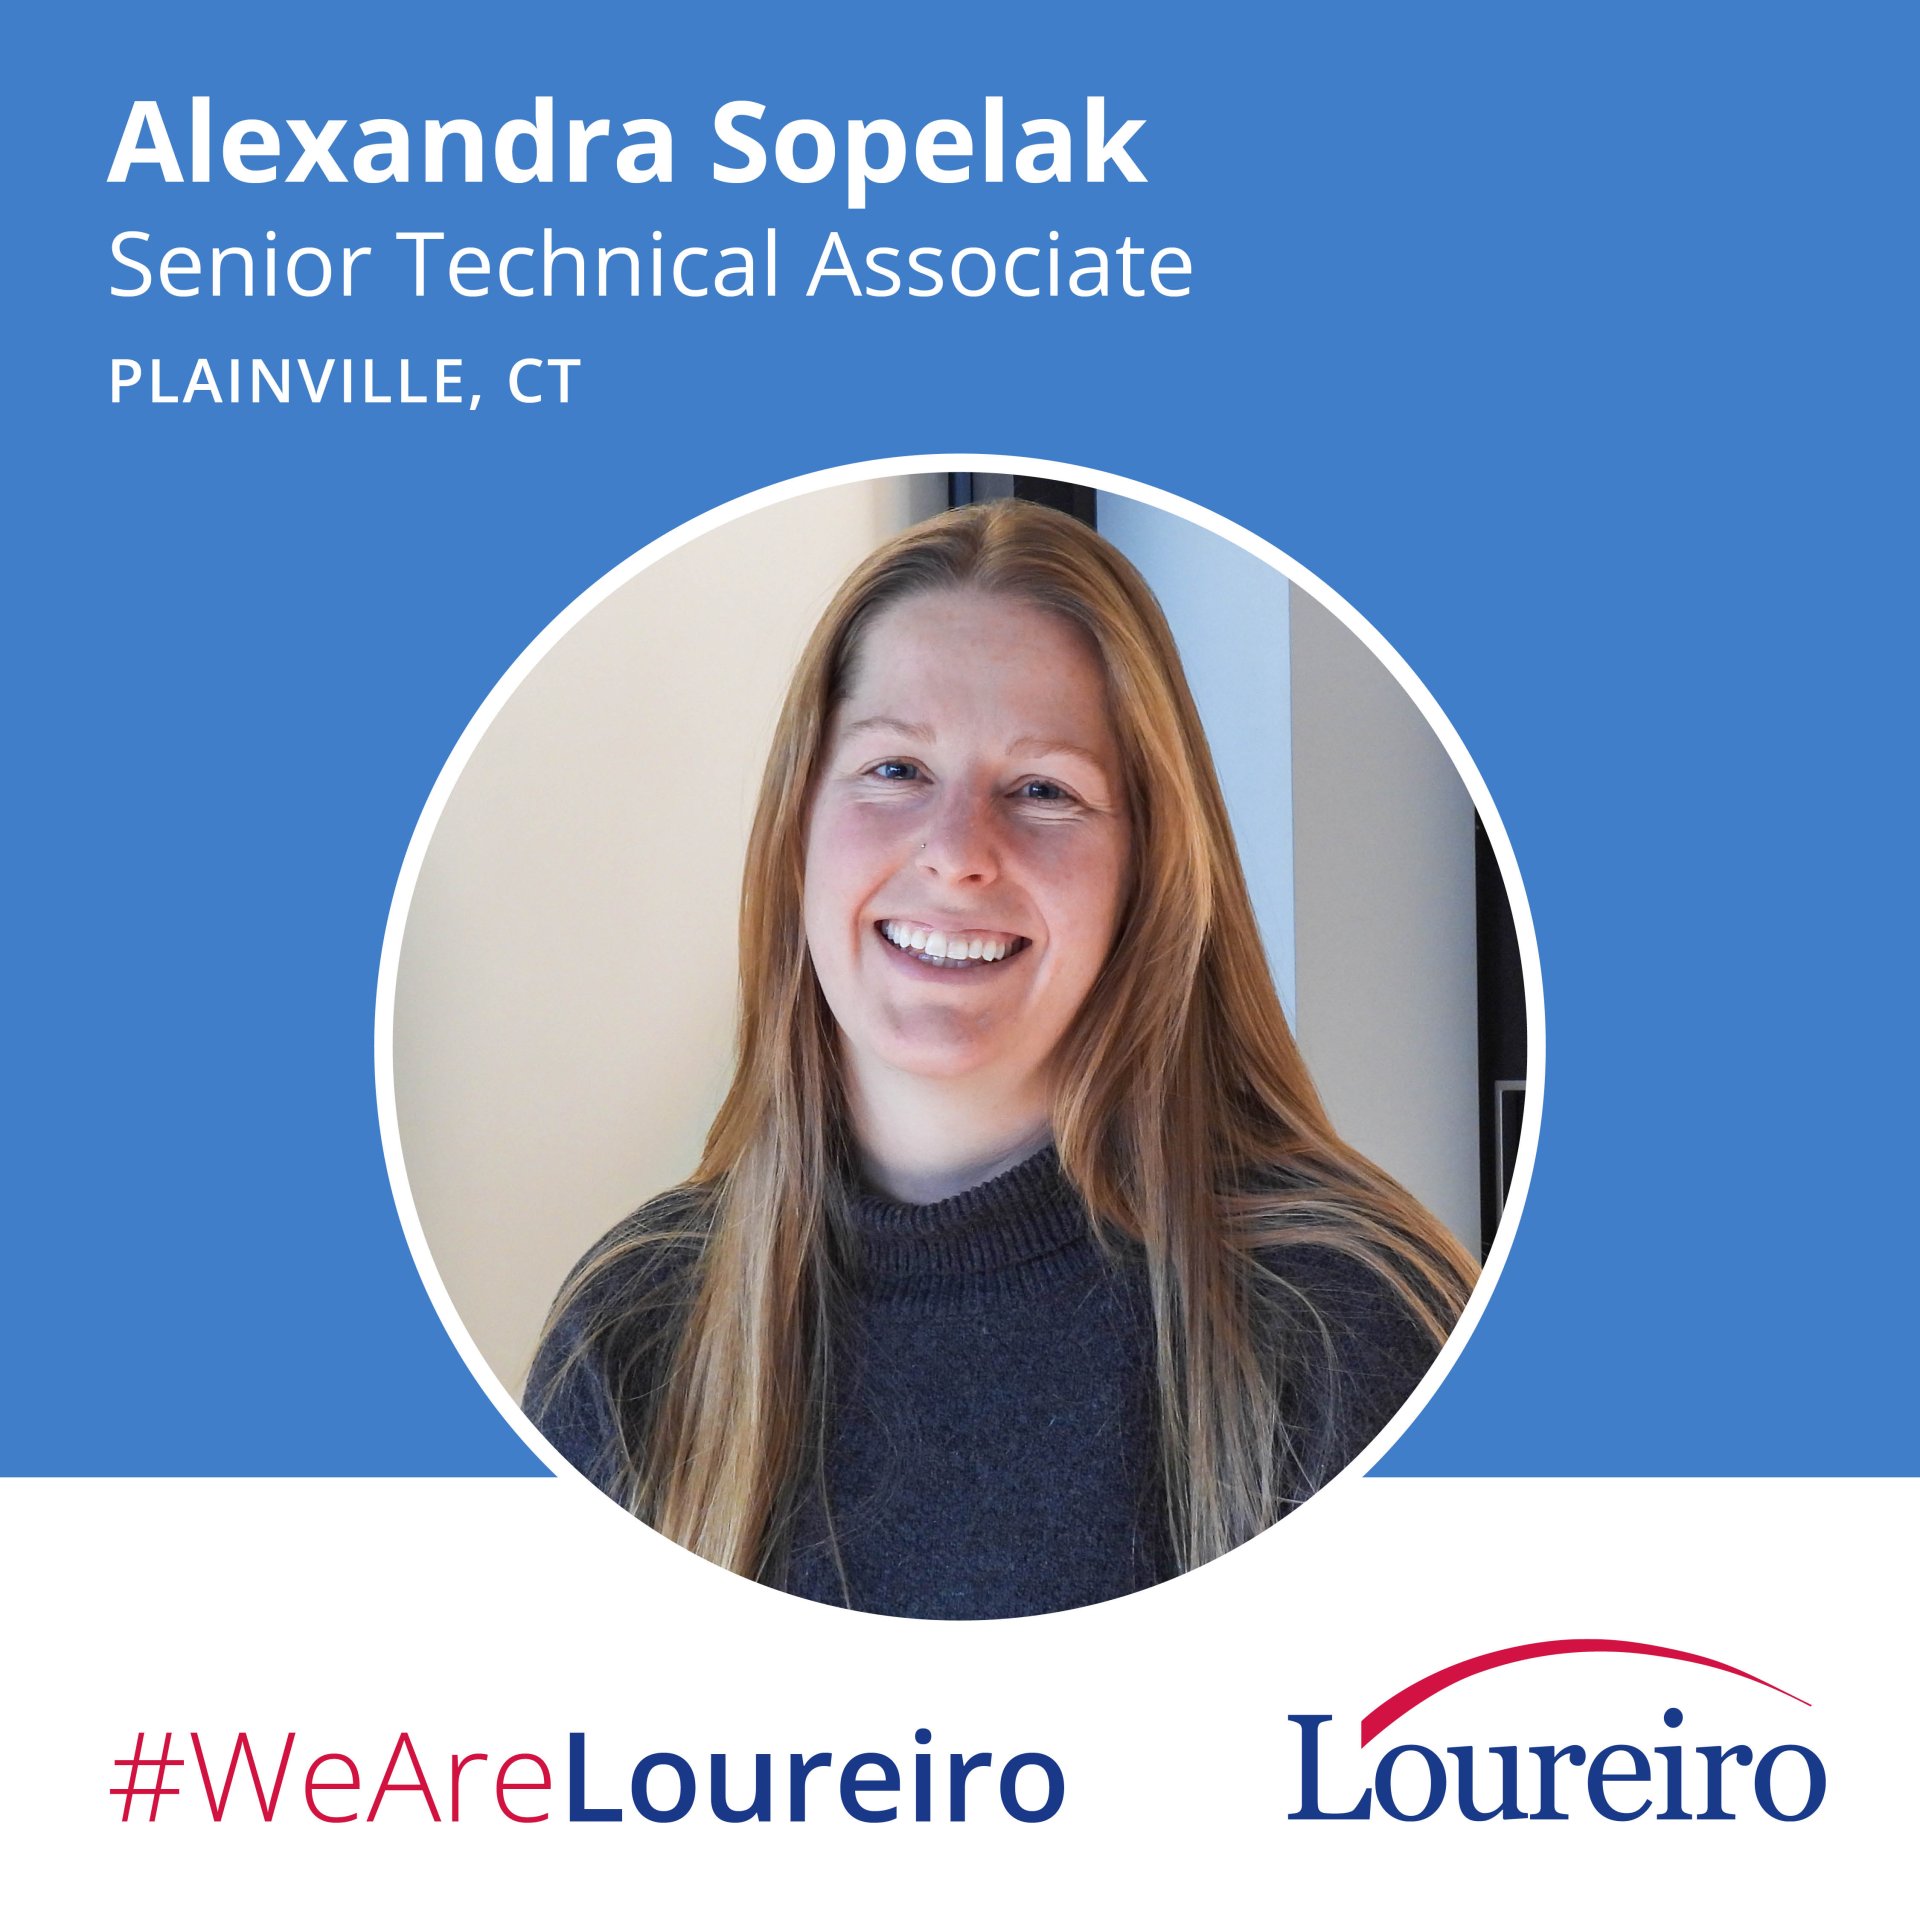 We Are Loureiro: Alexandra Sopelak